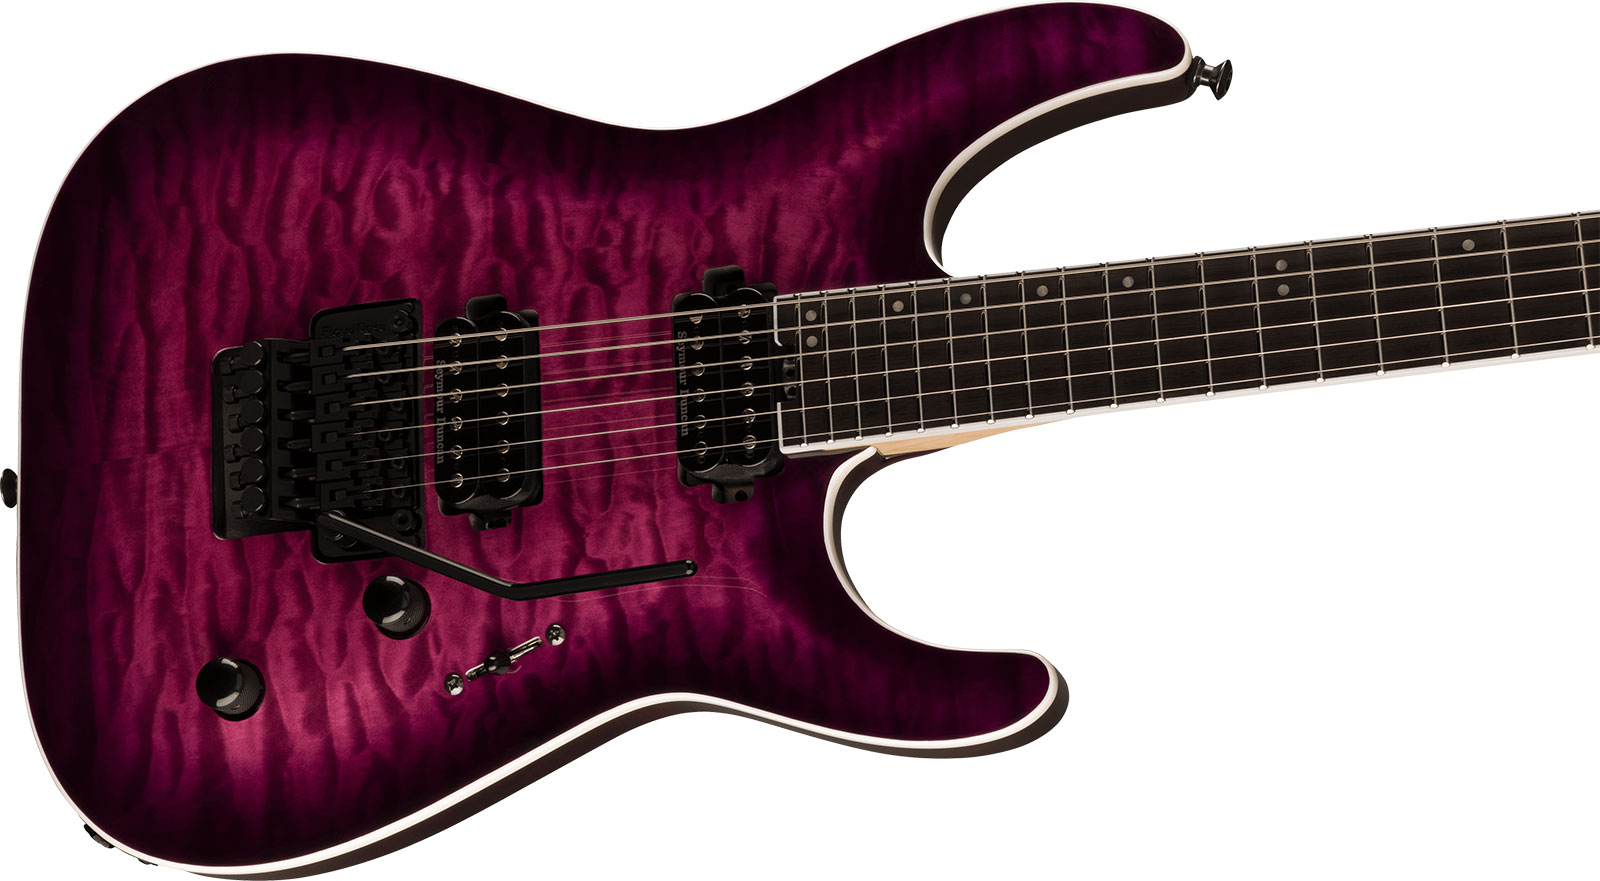 Jackson Dinky Dkaq Pro Plus 2h Seymour Duncan Fr Eb - Transparent Purple Burst - Guitarra eléctrica con forma de str. - Variation 2